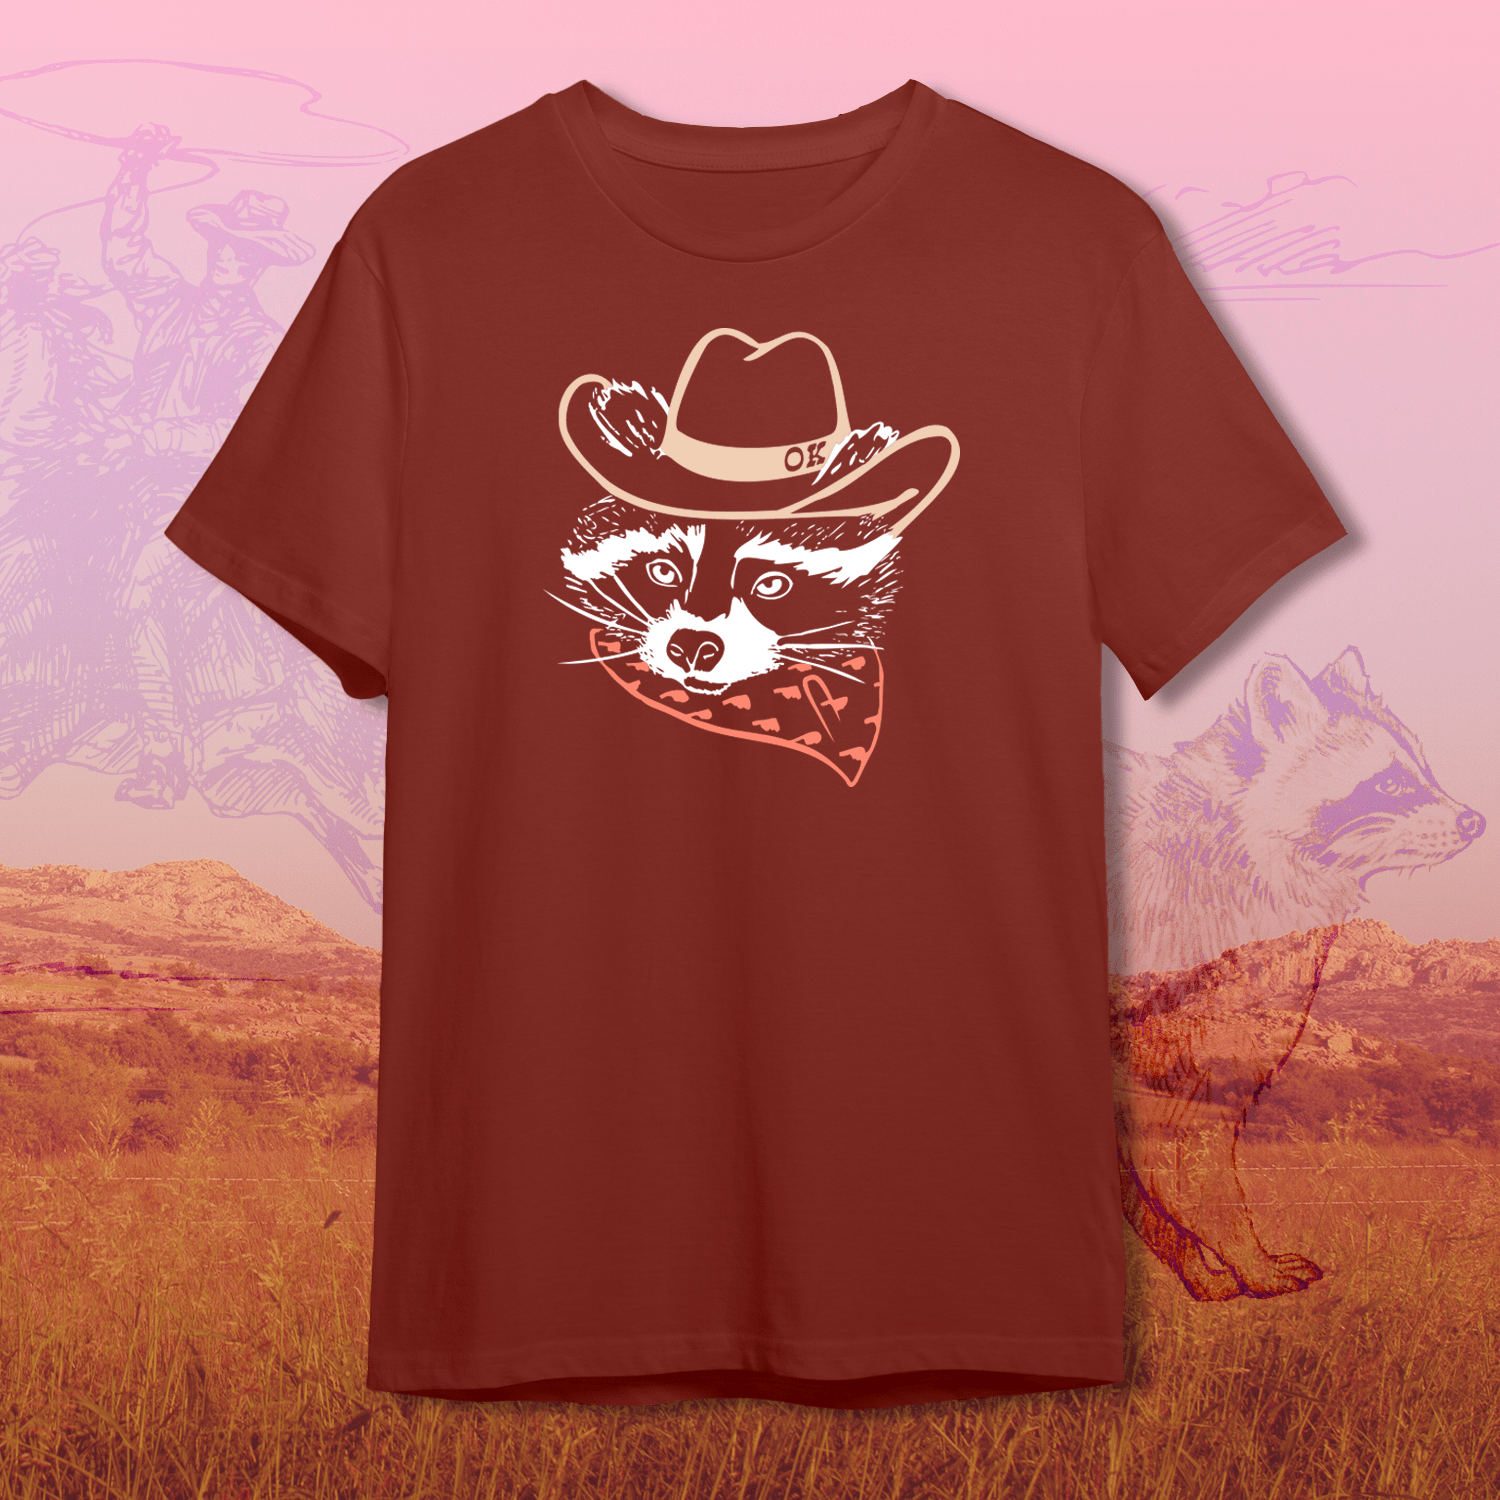 ✨ Shop Oklahoma Tees - Oklahoma Shirt Company